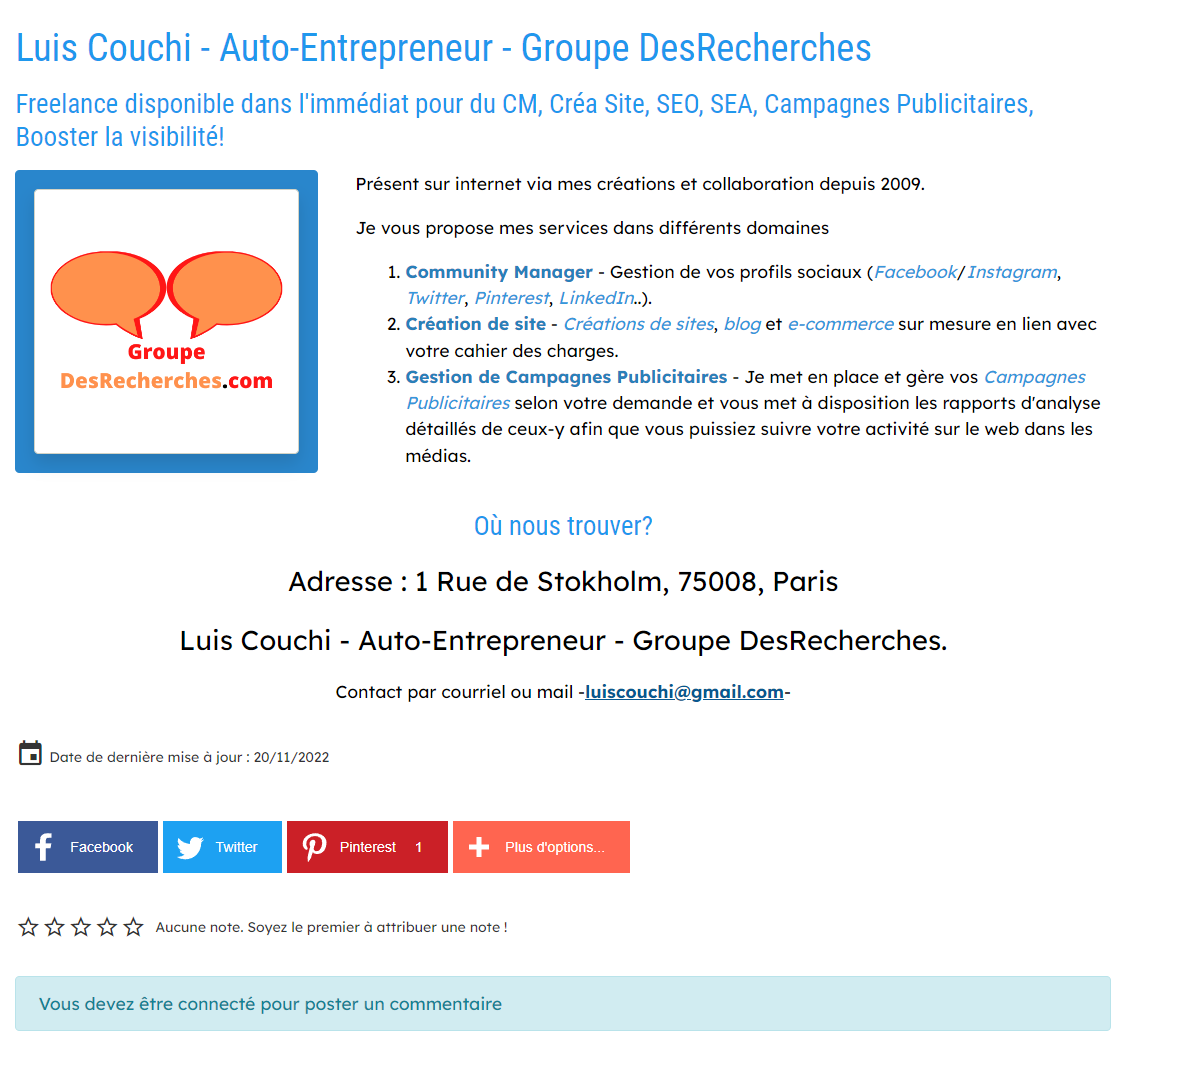 Capture - luis couchi auto entrepreneur groupe desrecherches com adresses www desrecherches com - Adresses by DesRecherches.com